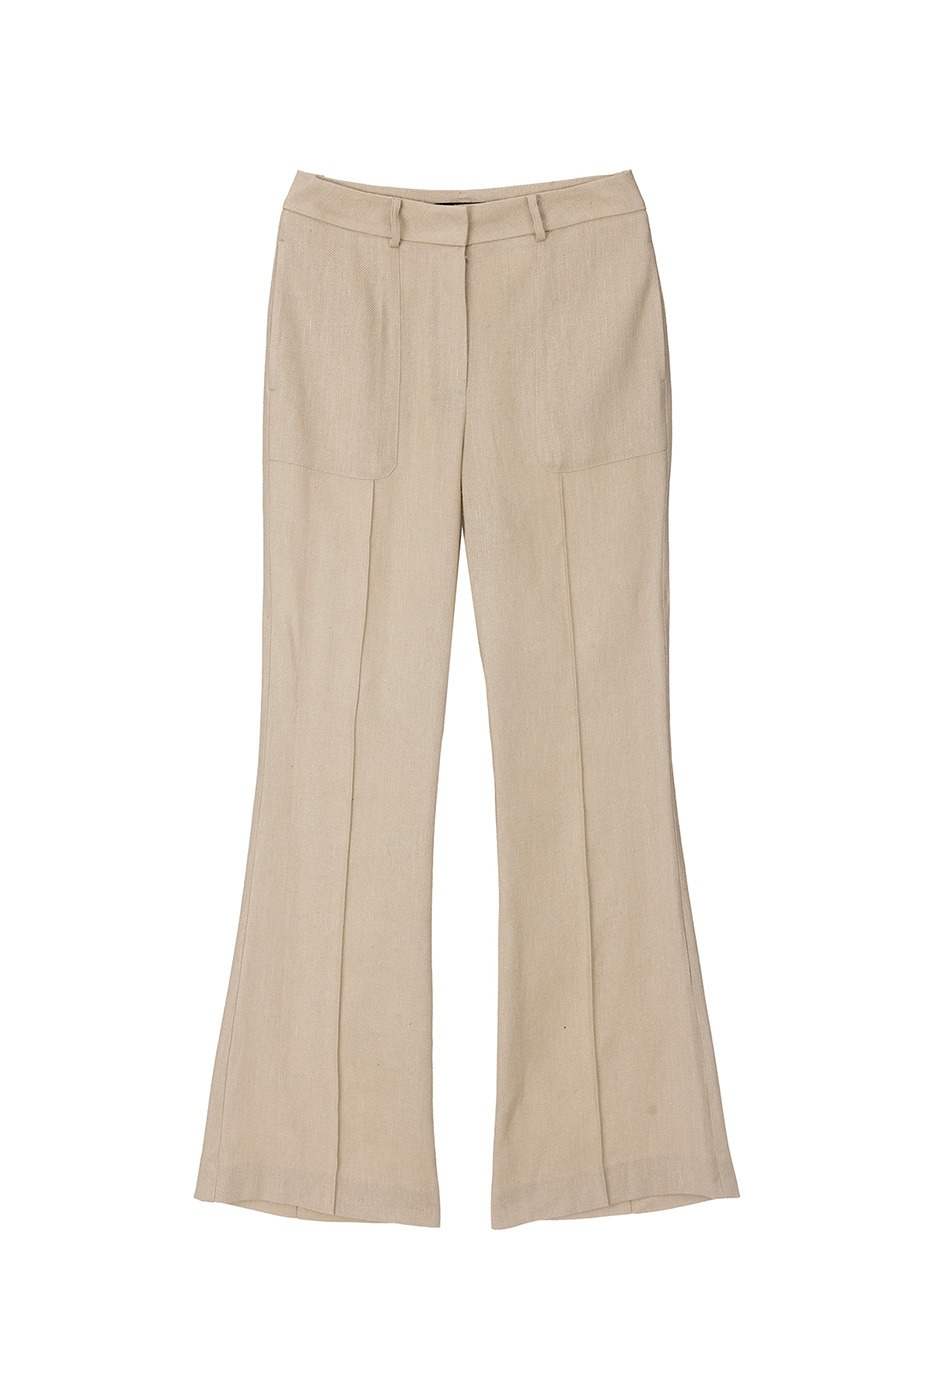 silk linen boots-cut pants-beige